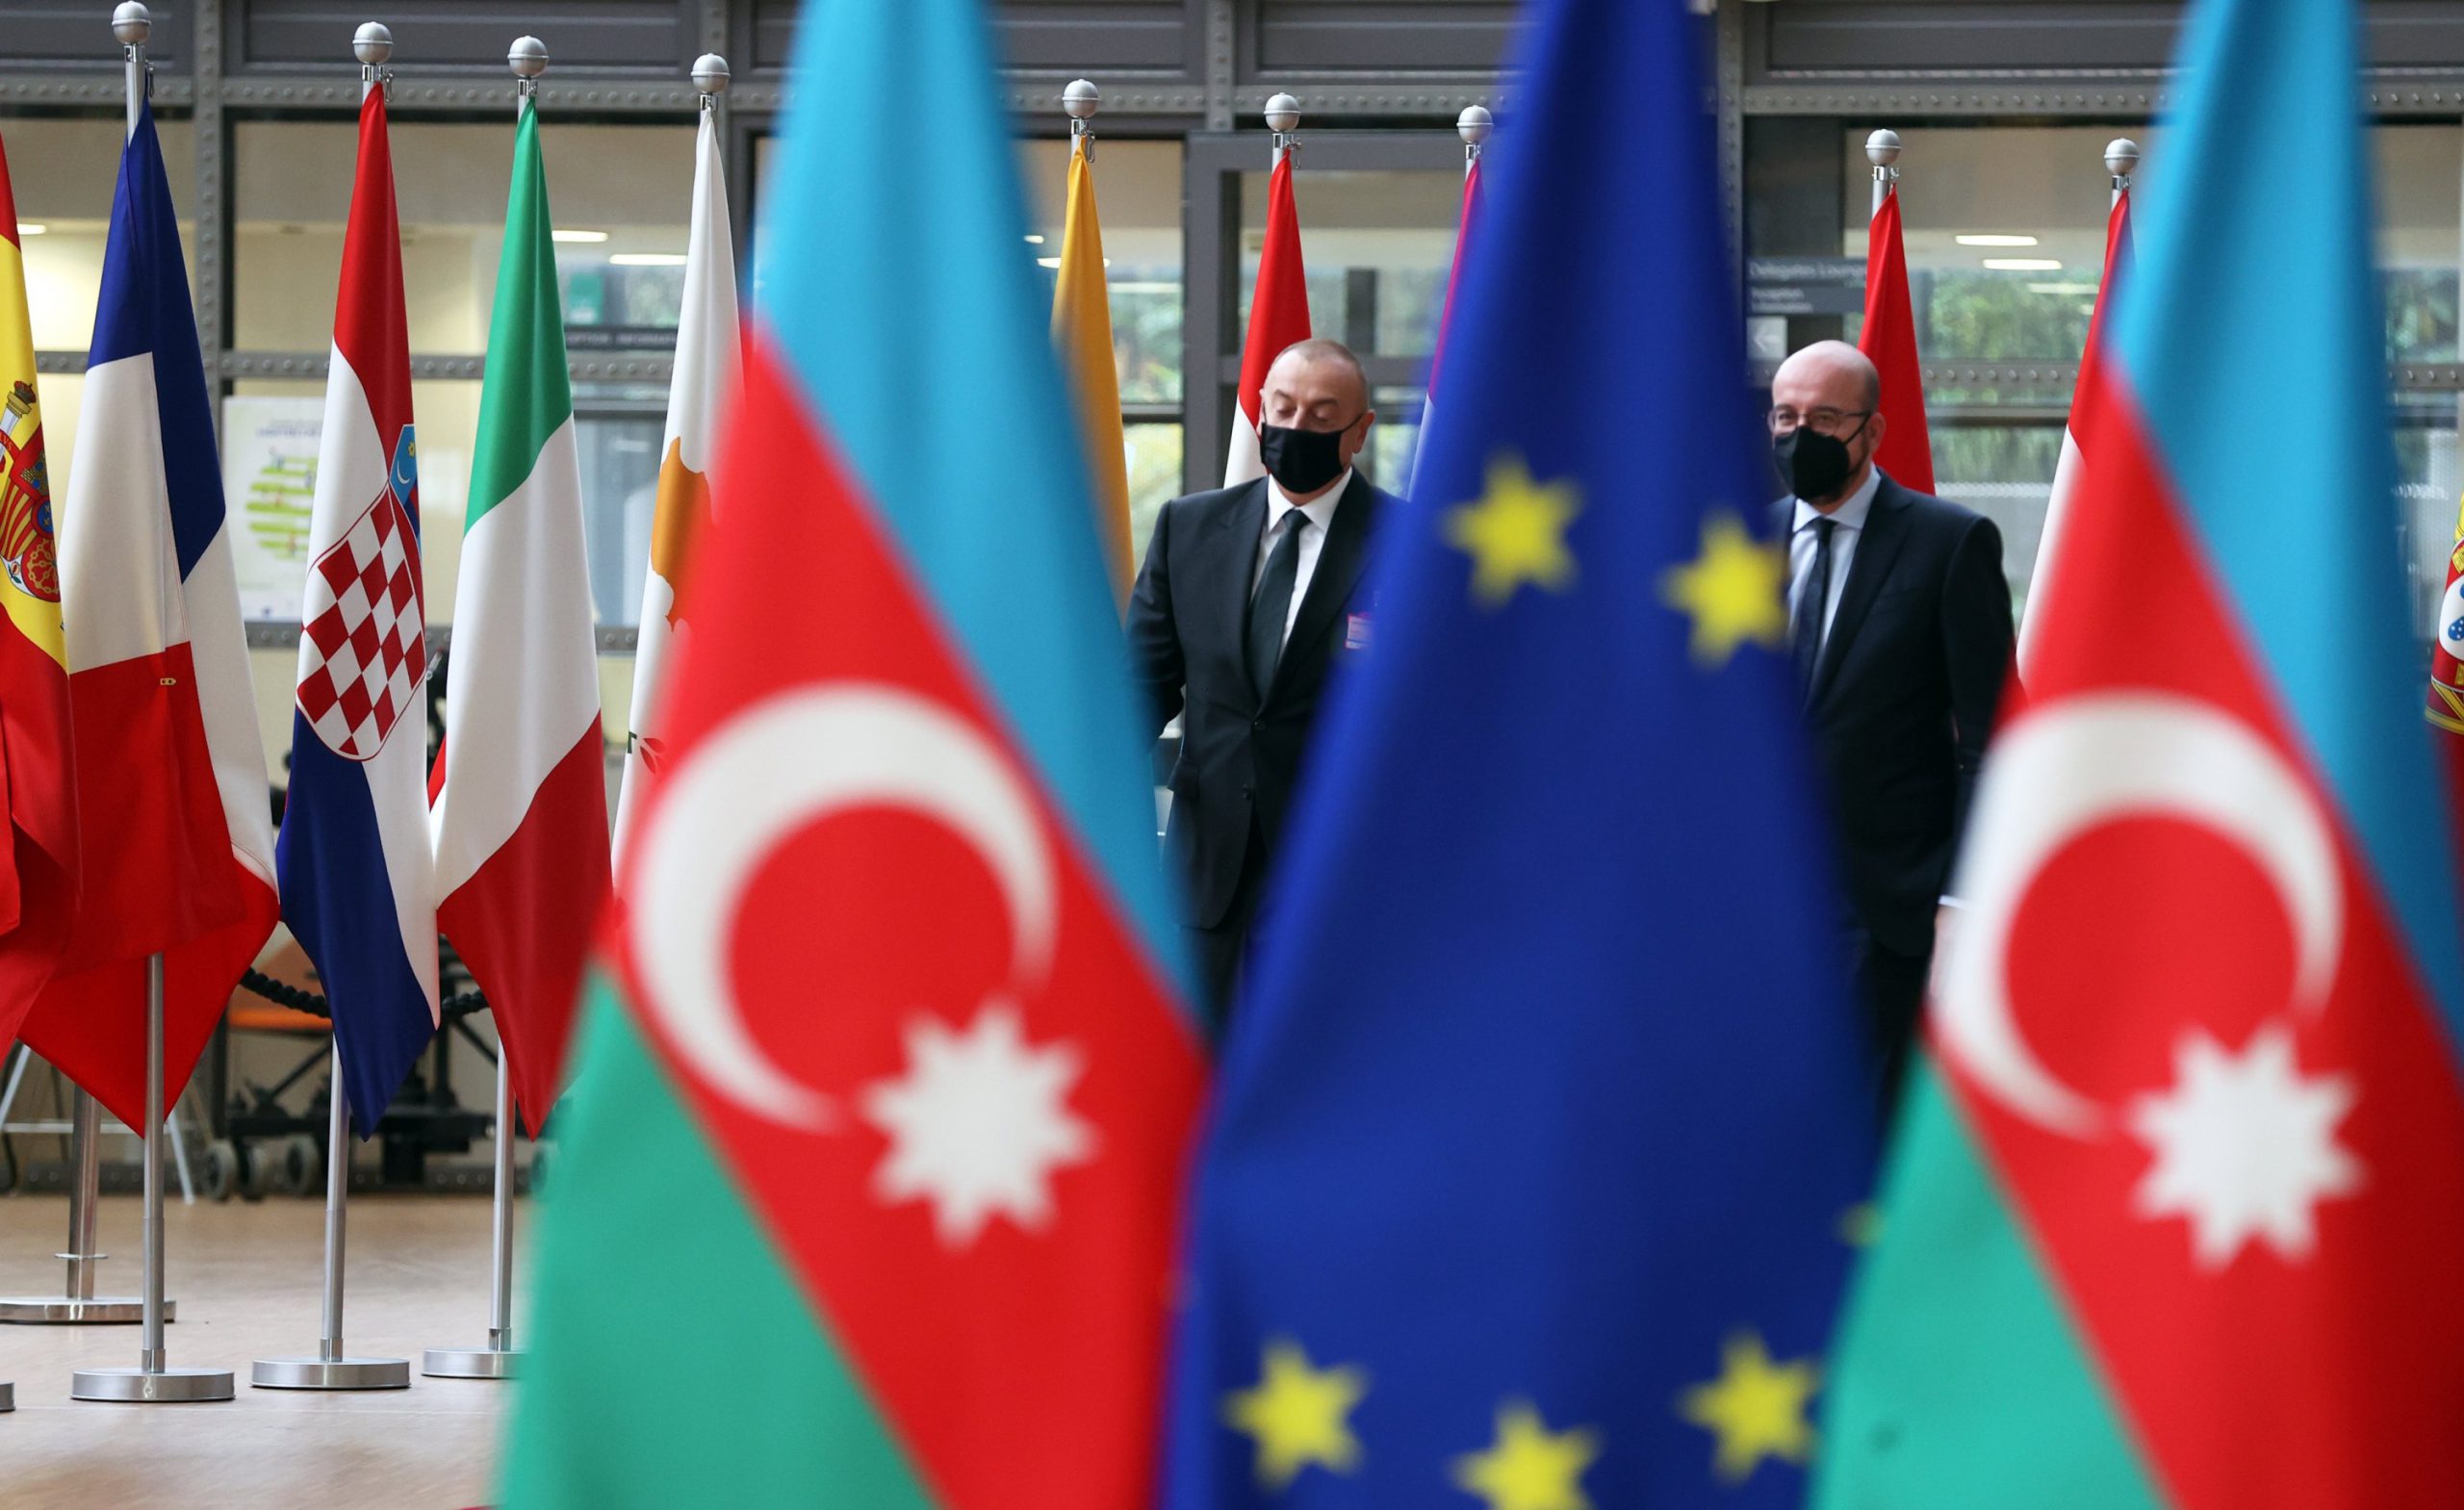 EU-Azerbaijan Cooperation Council